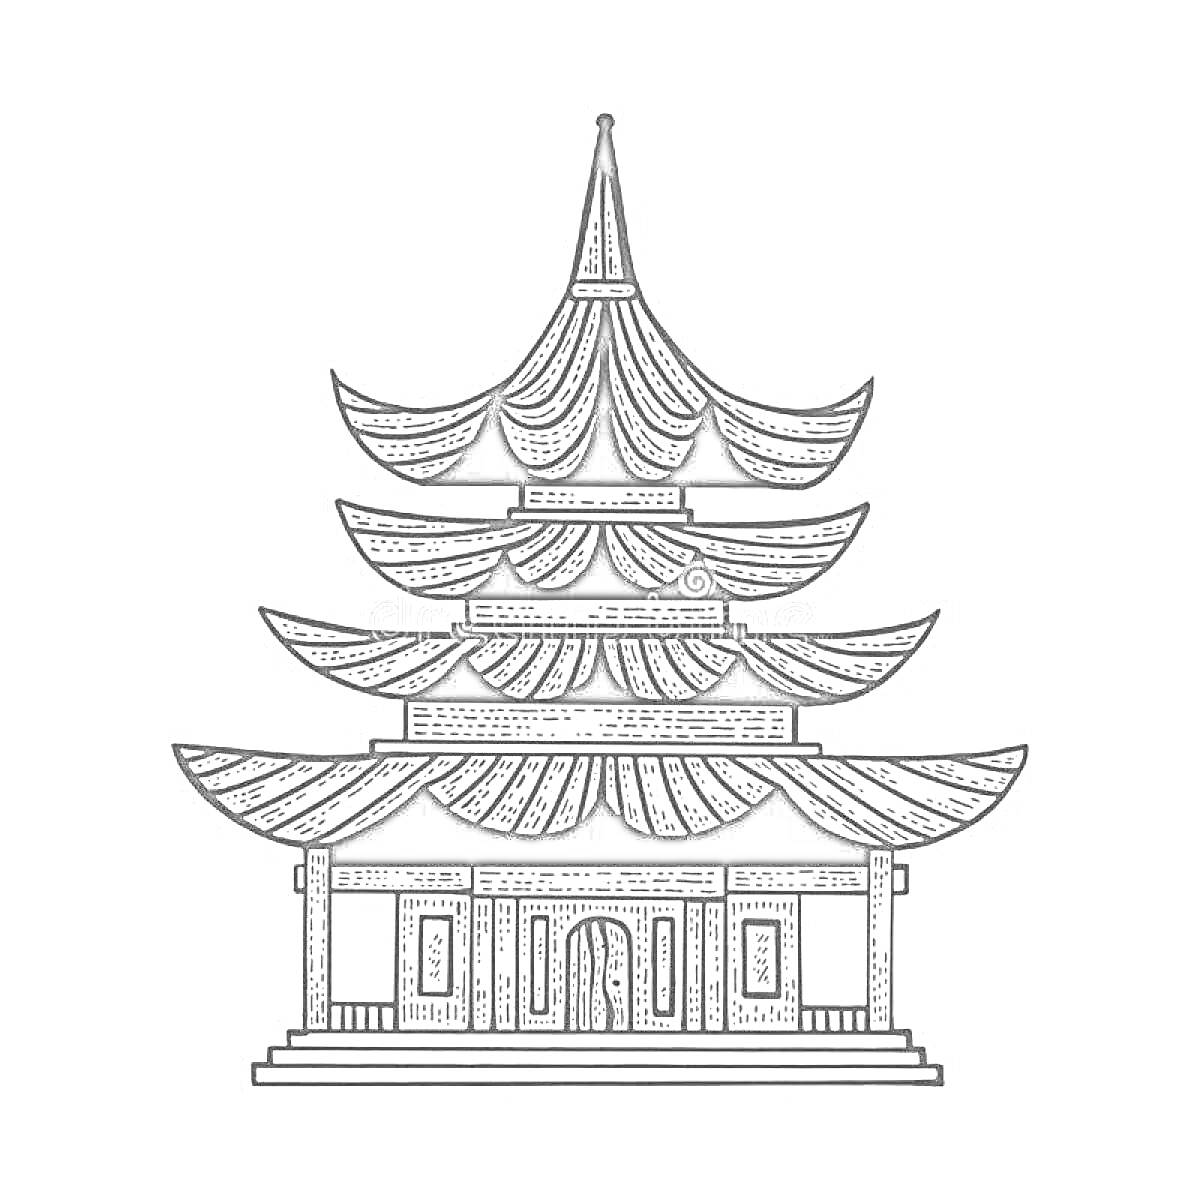 пагода с многоярусной крышей и колоннами